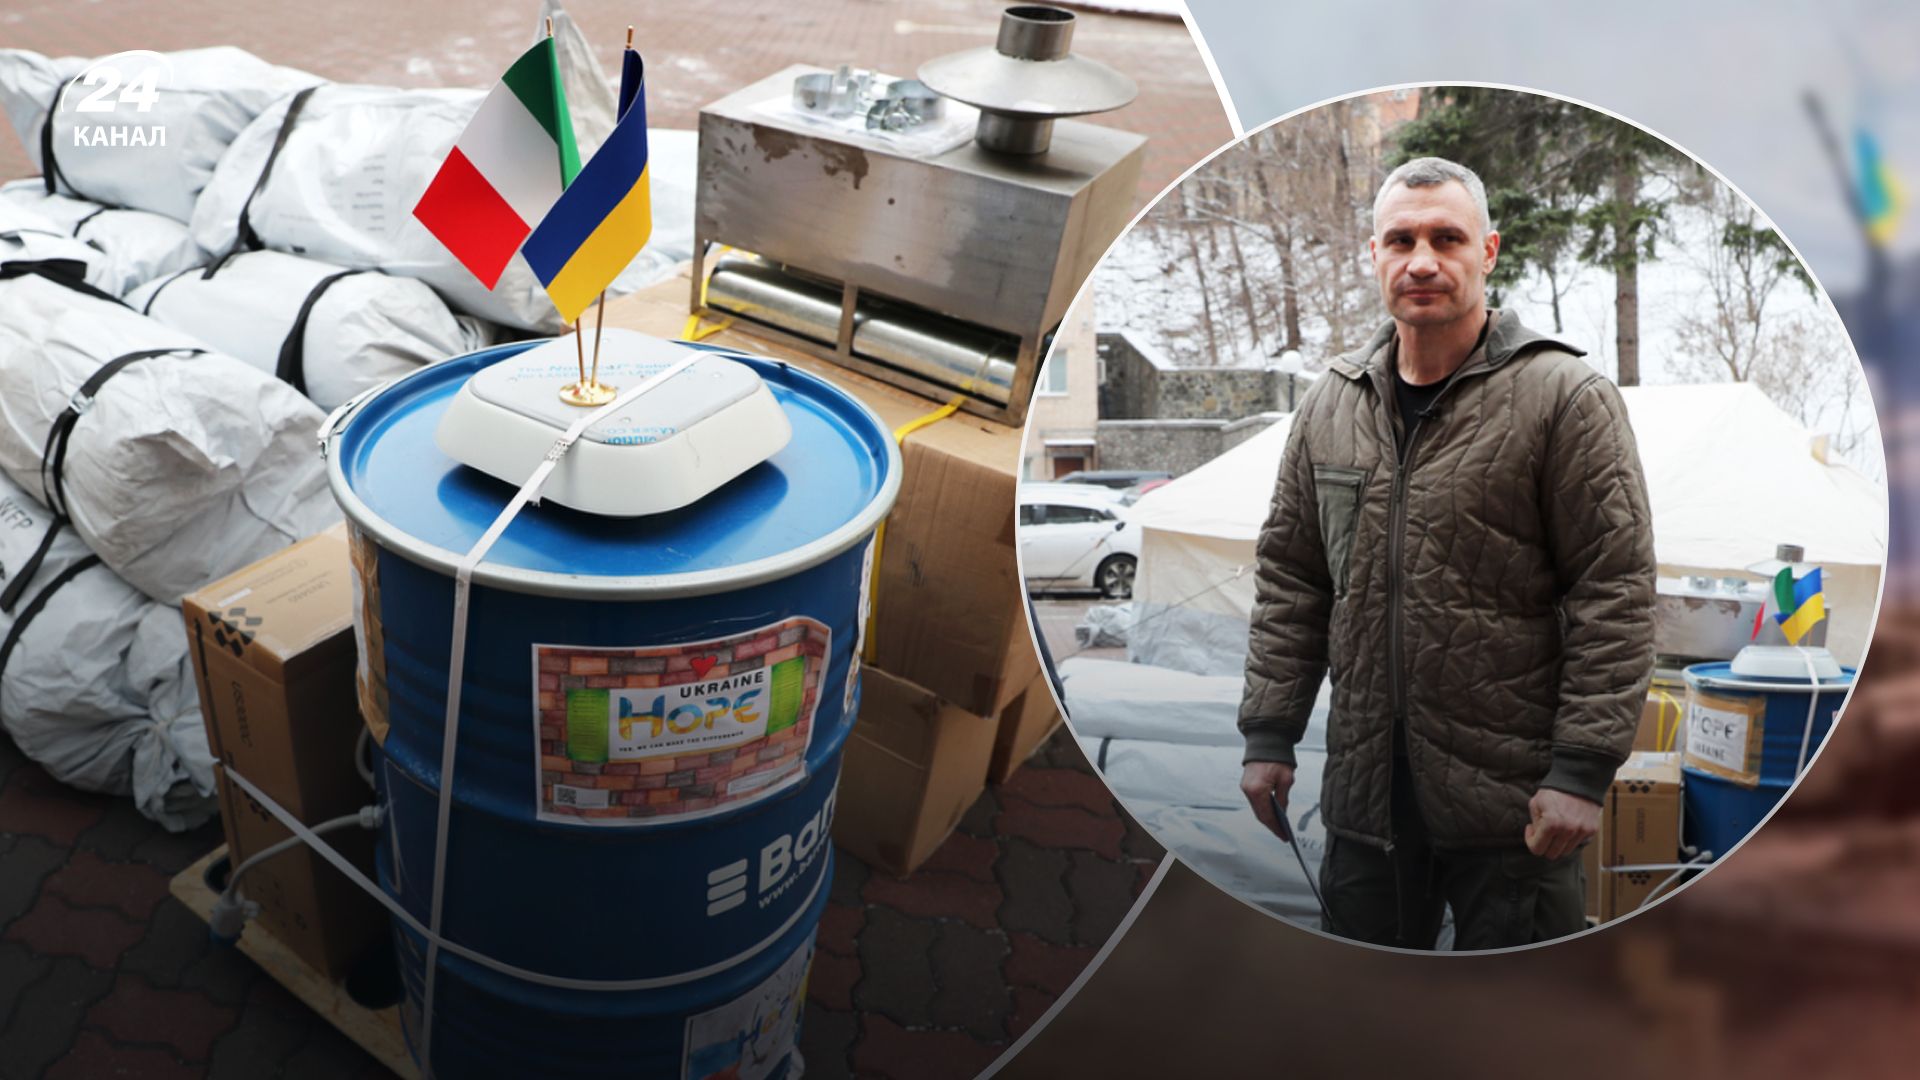 Київ отримав від італійських партнерів обладнання для пунктів обігріву, – Кличко